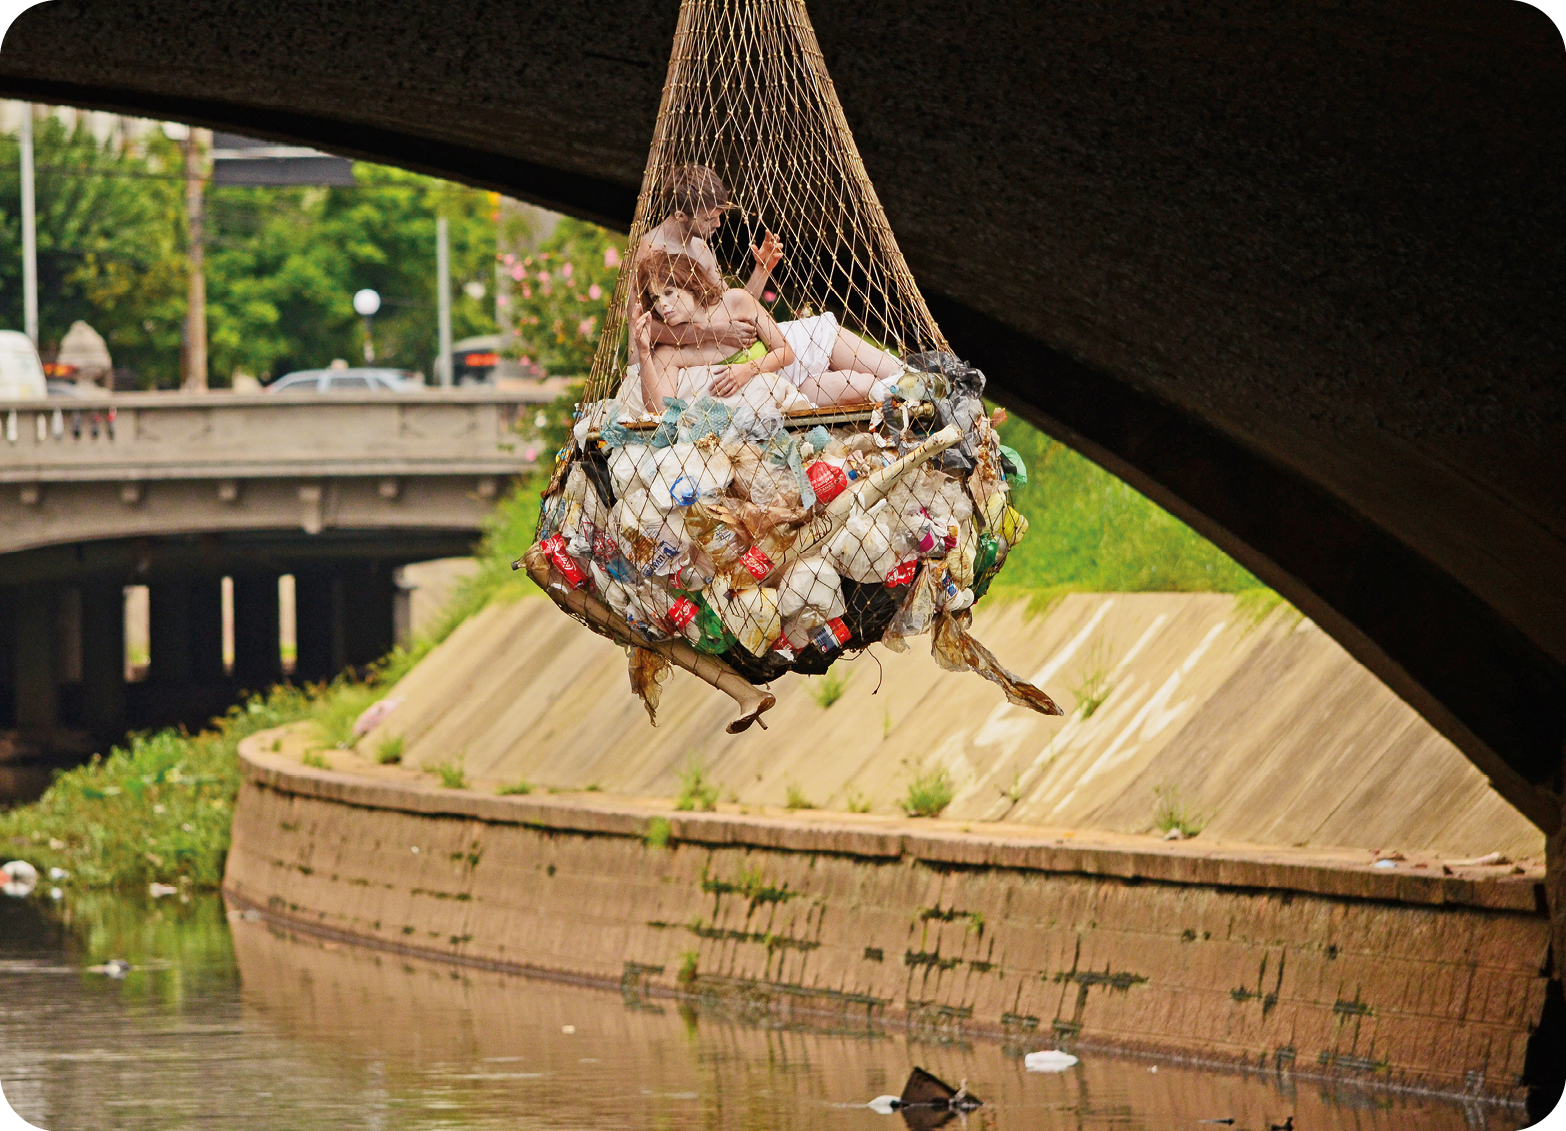 Fotografia. Plano aberto que apresenta uma rede de pesca repleta de lixo pendurada em uma ponte acima de um rio com dejetos. Acima do lixo e dentro da rede, há um casal. Ao fundo, trecho urbano.